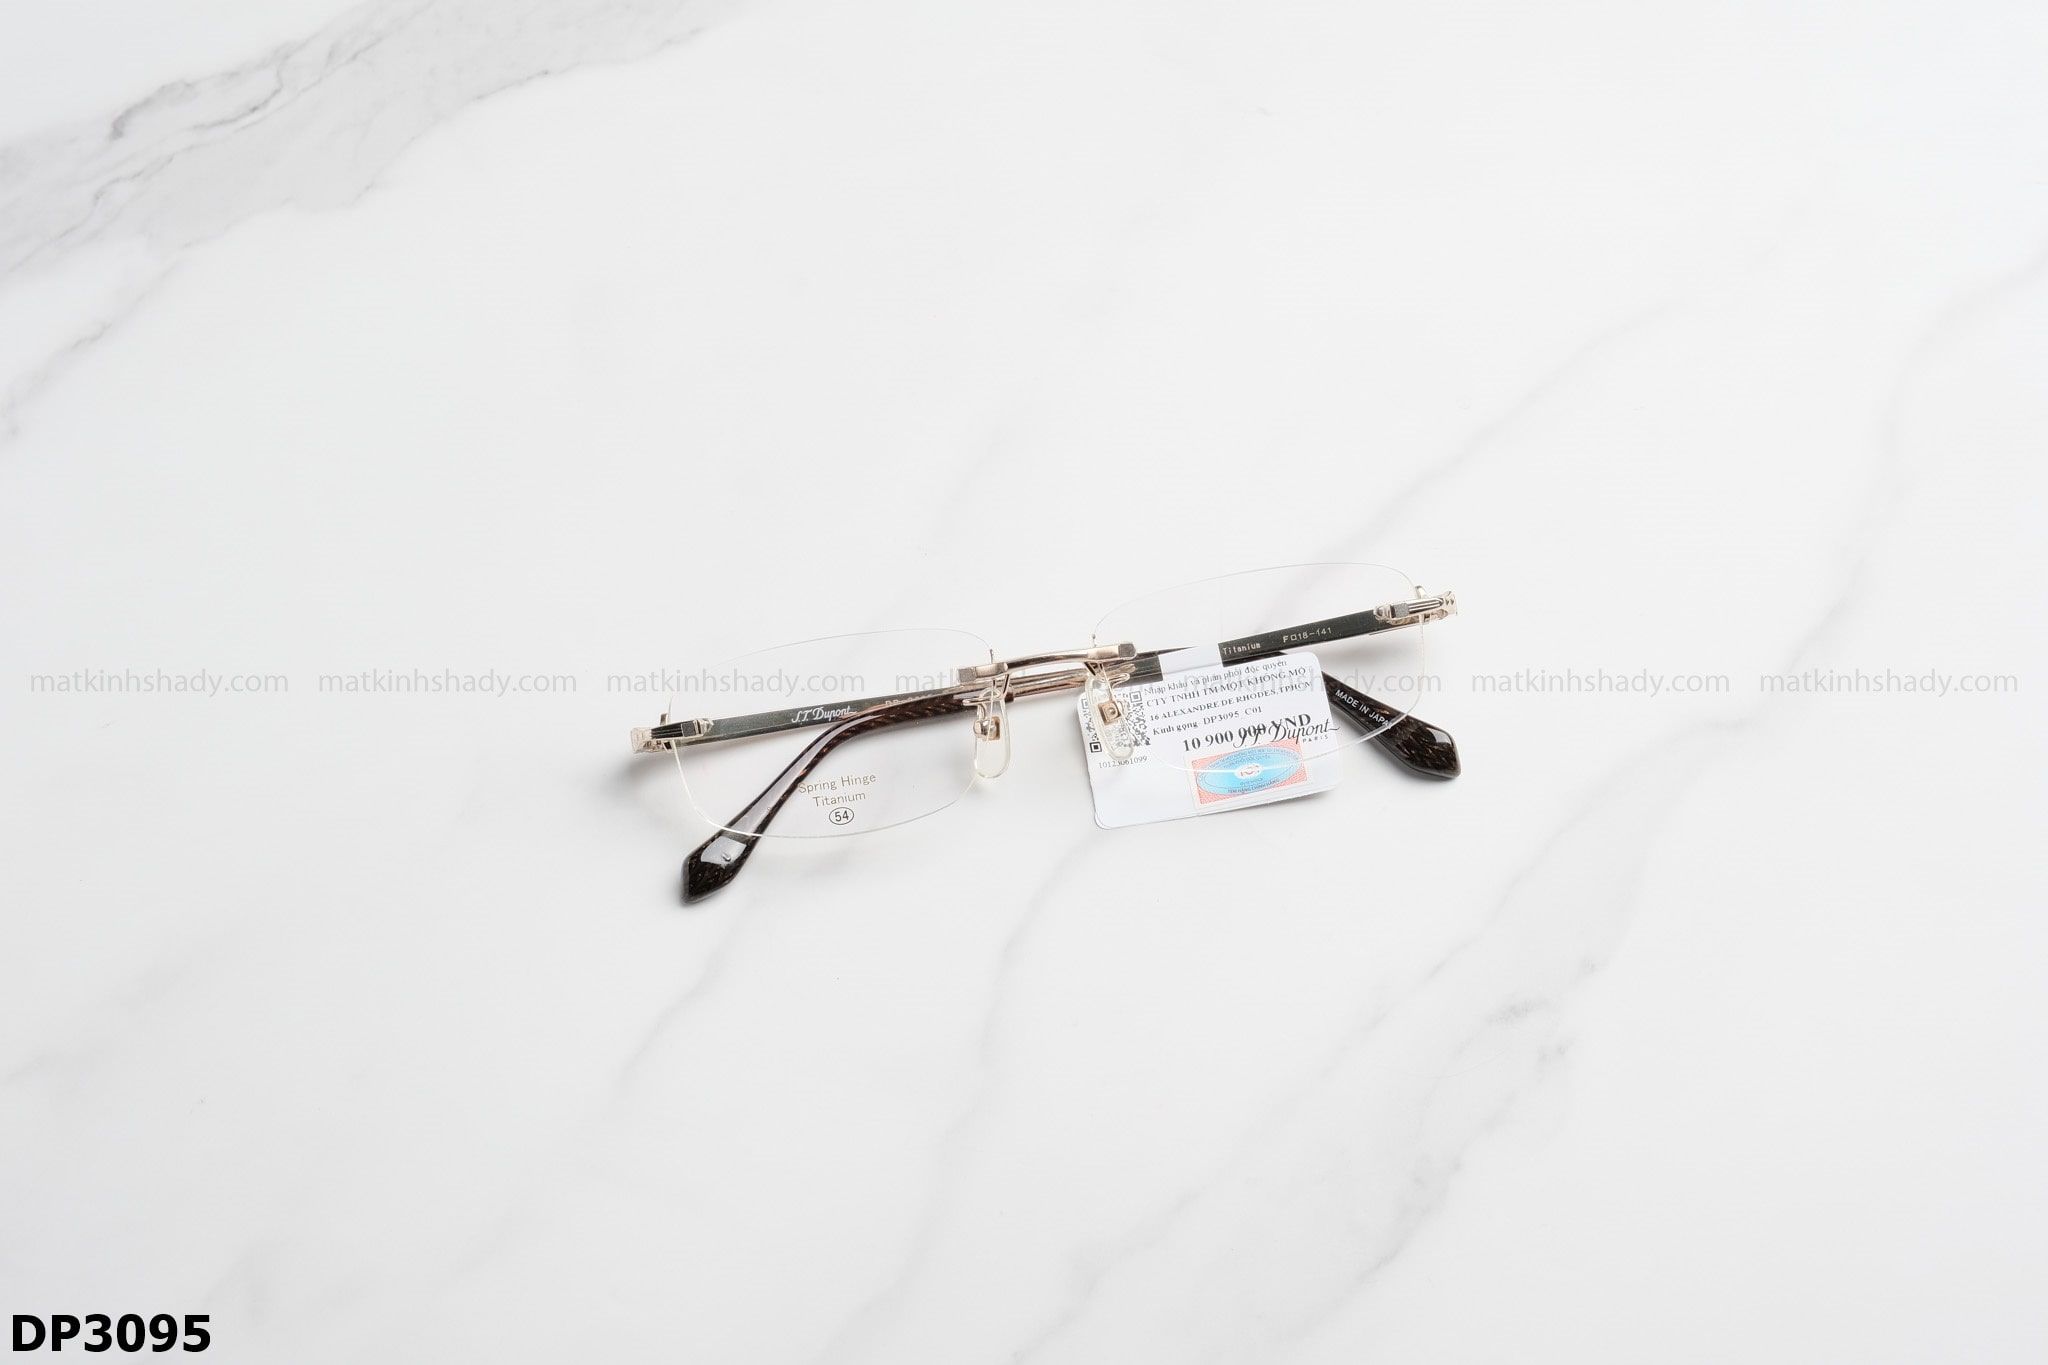  S.T.Dupont Eyewear - Glasses - DP3095 